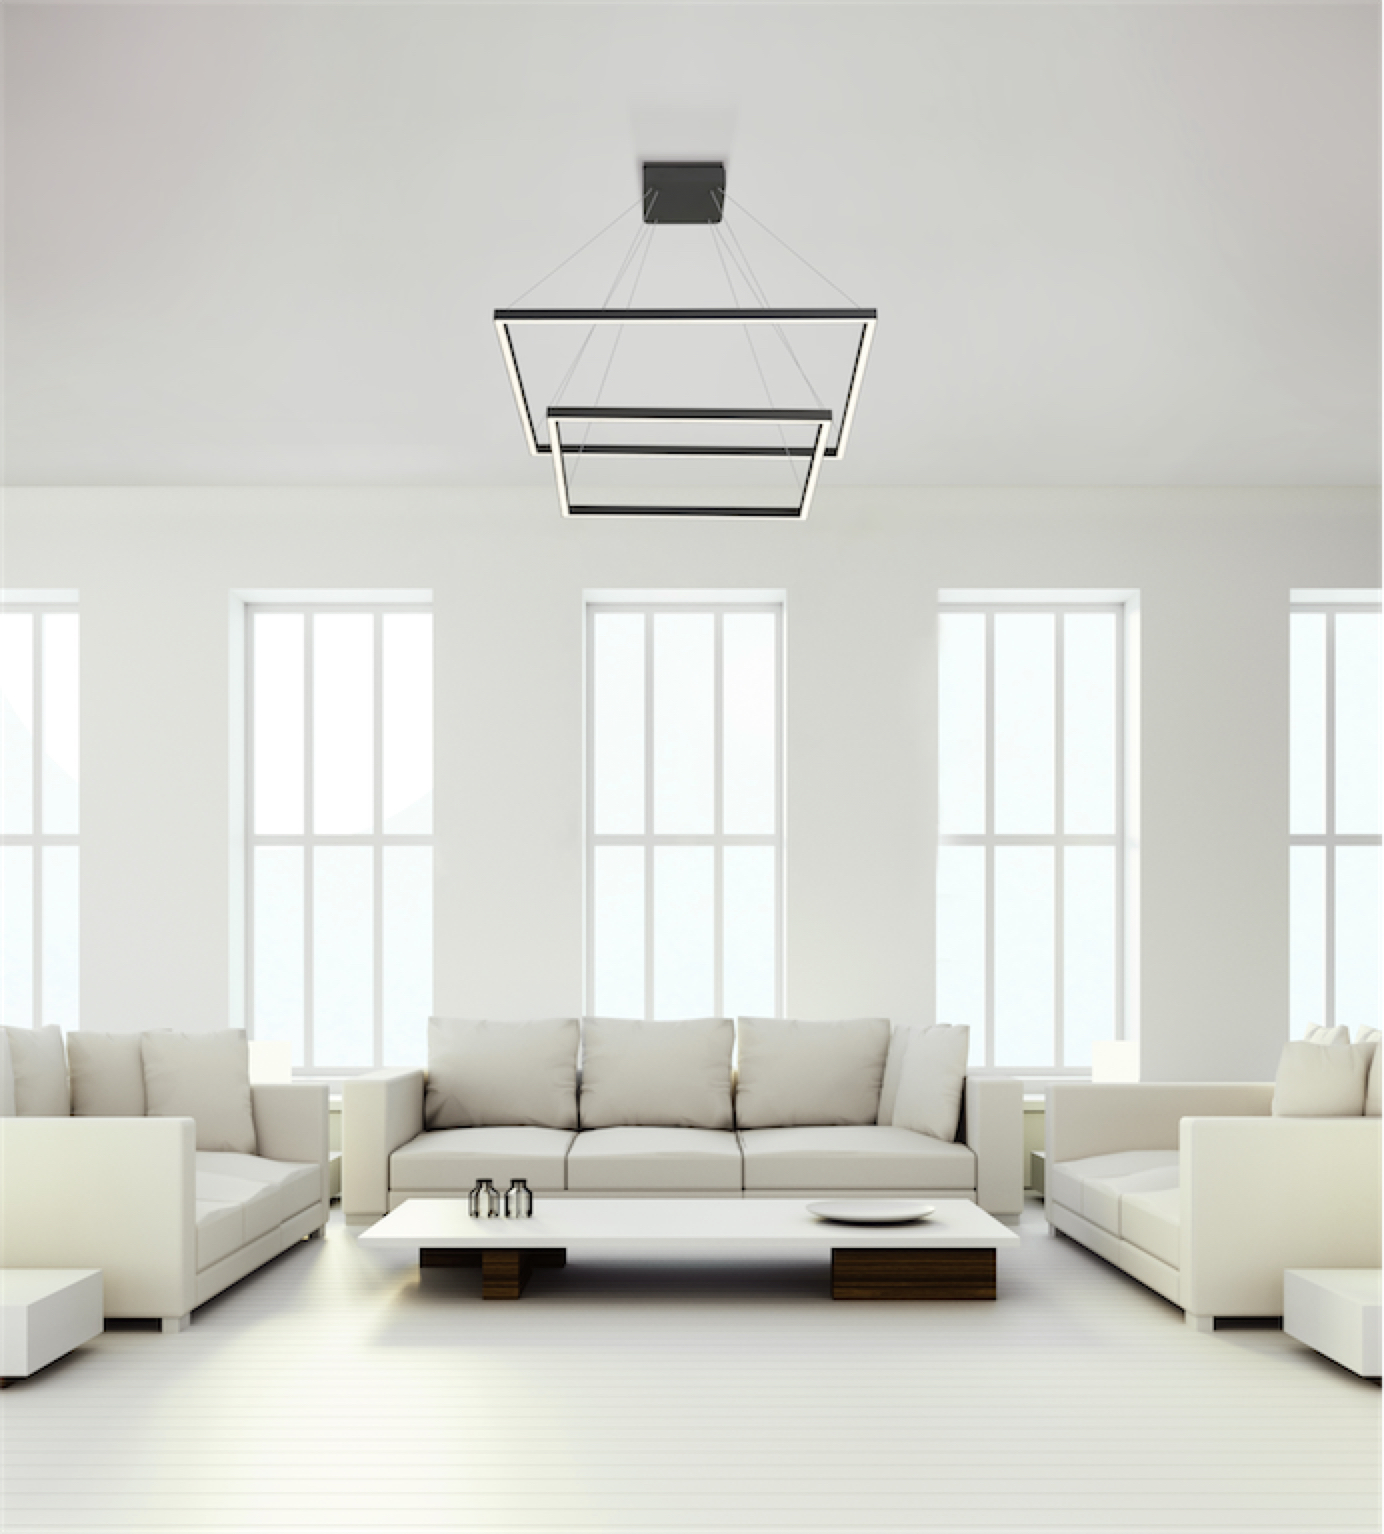 Luminaire suspendu moderne PIAZZA Kuzco CH85232-BK dans un salon blanc avec haut plafond et grandes fenêtres